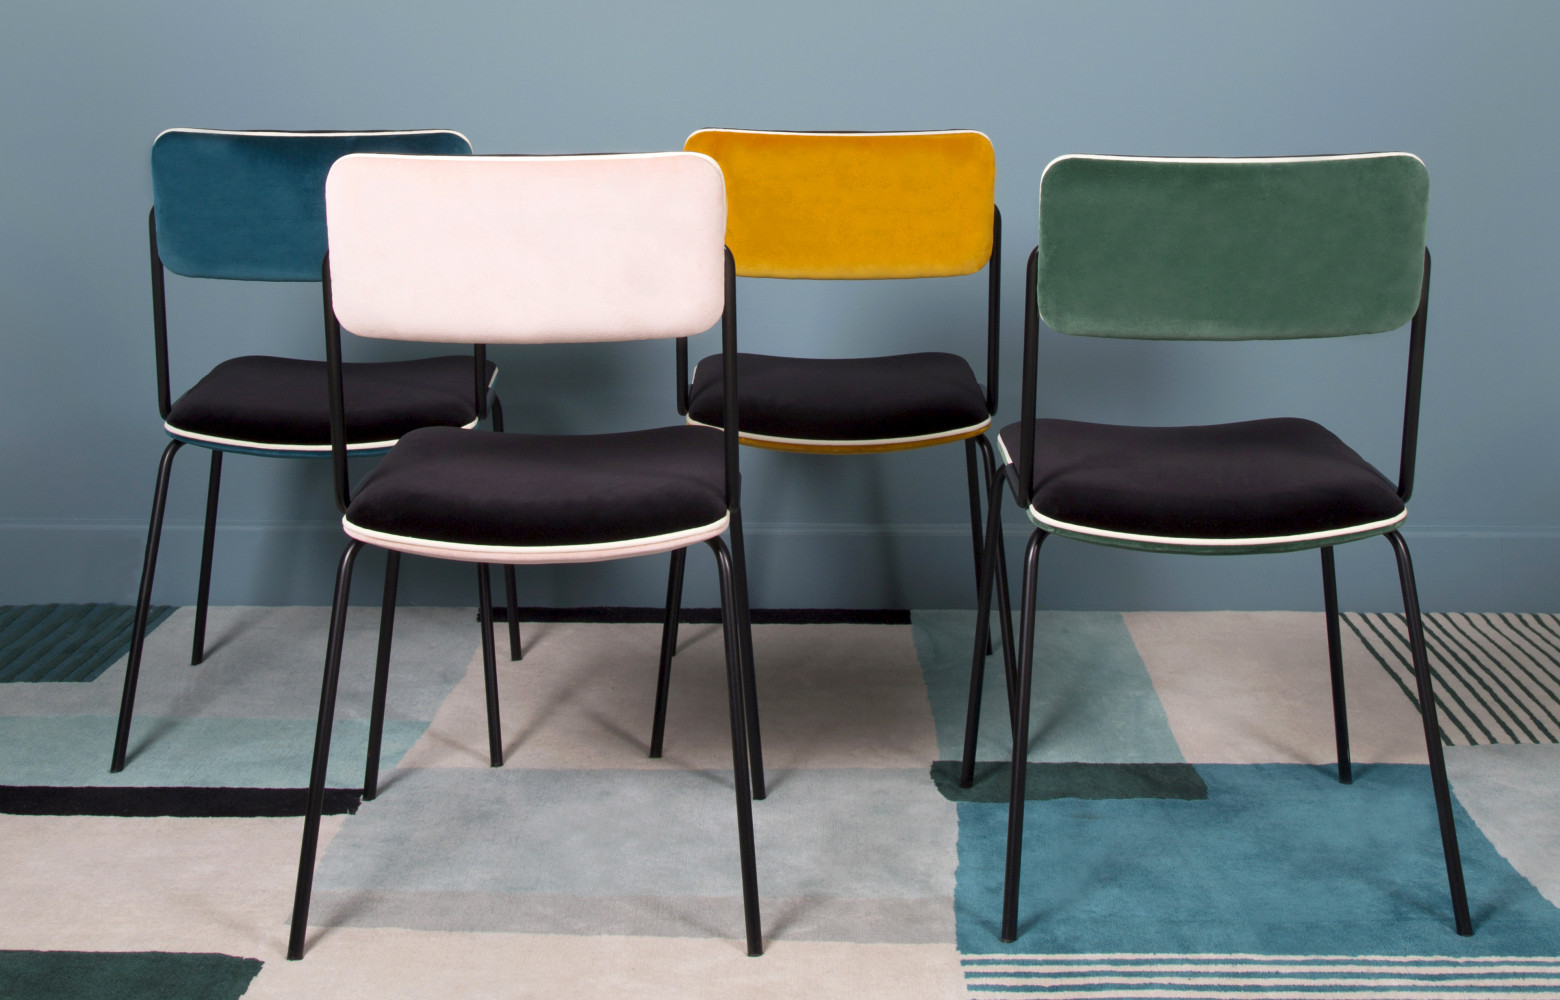 Nouvelles venues au catalogue Maison Sarah Lavoine, les chaises Double Jeu sont disponibles en quatre coloris.